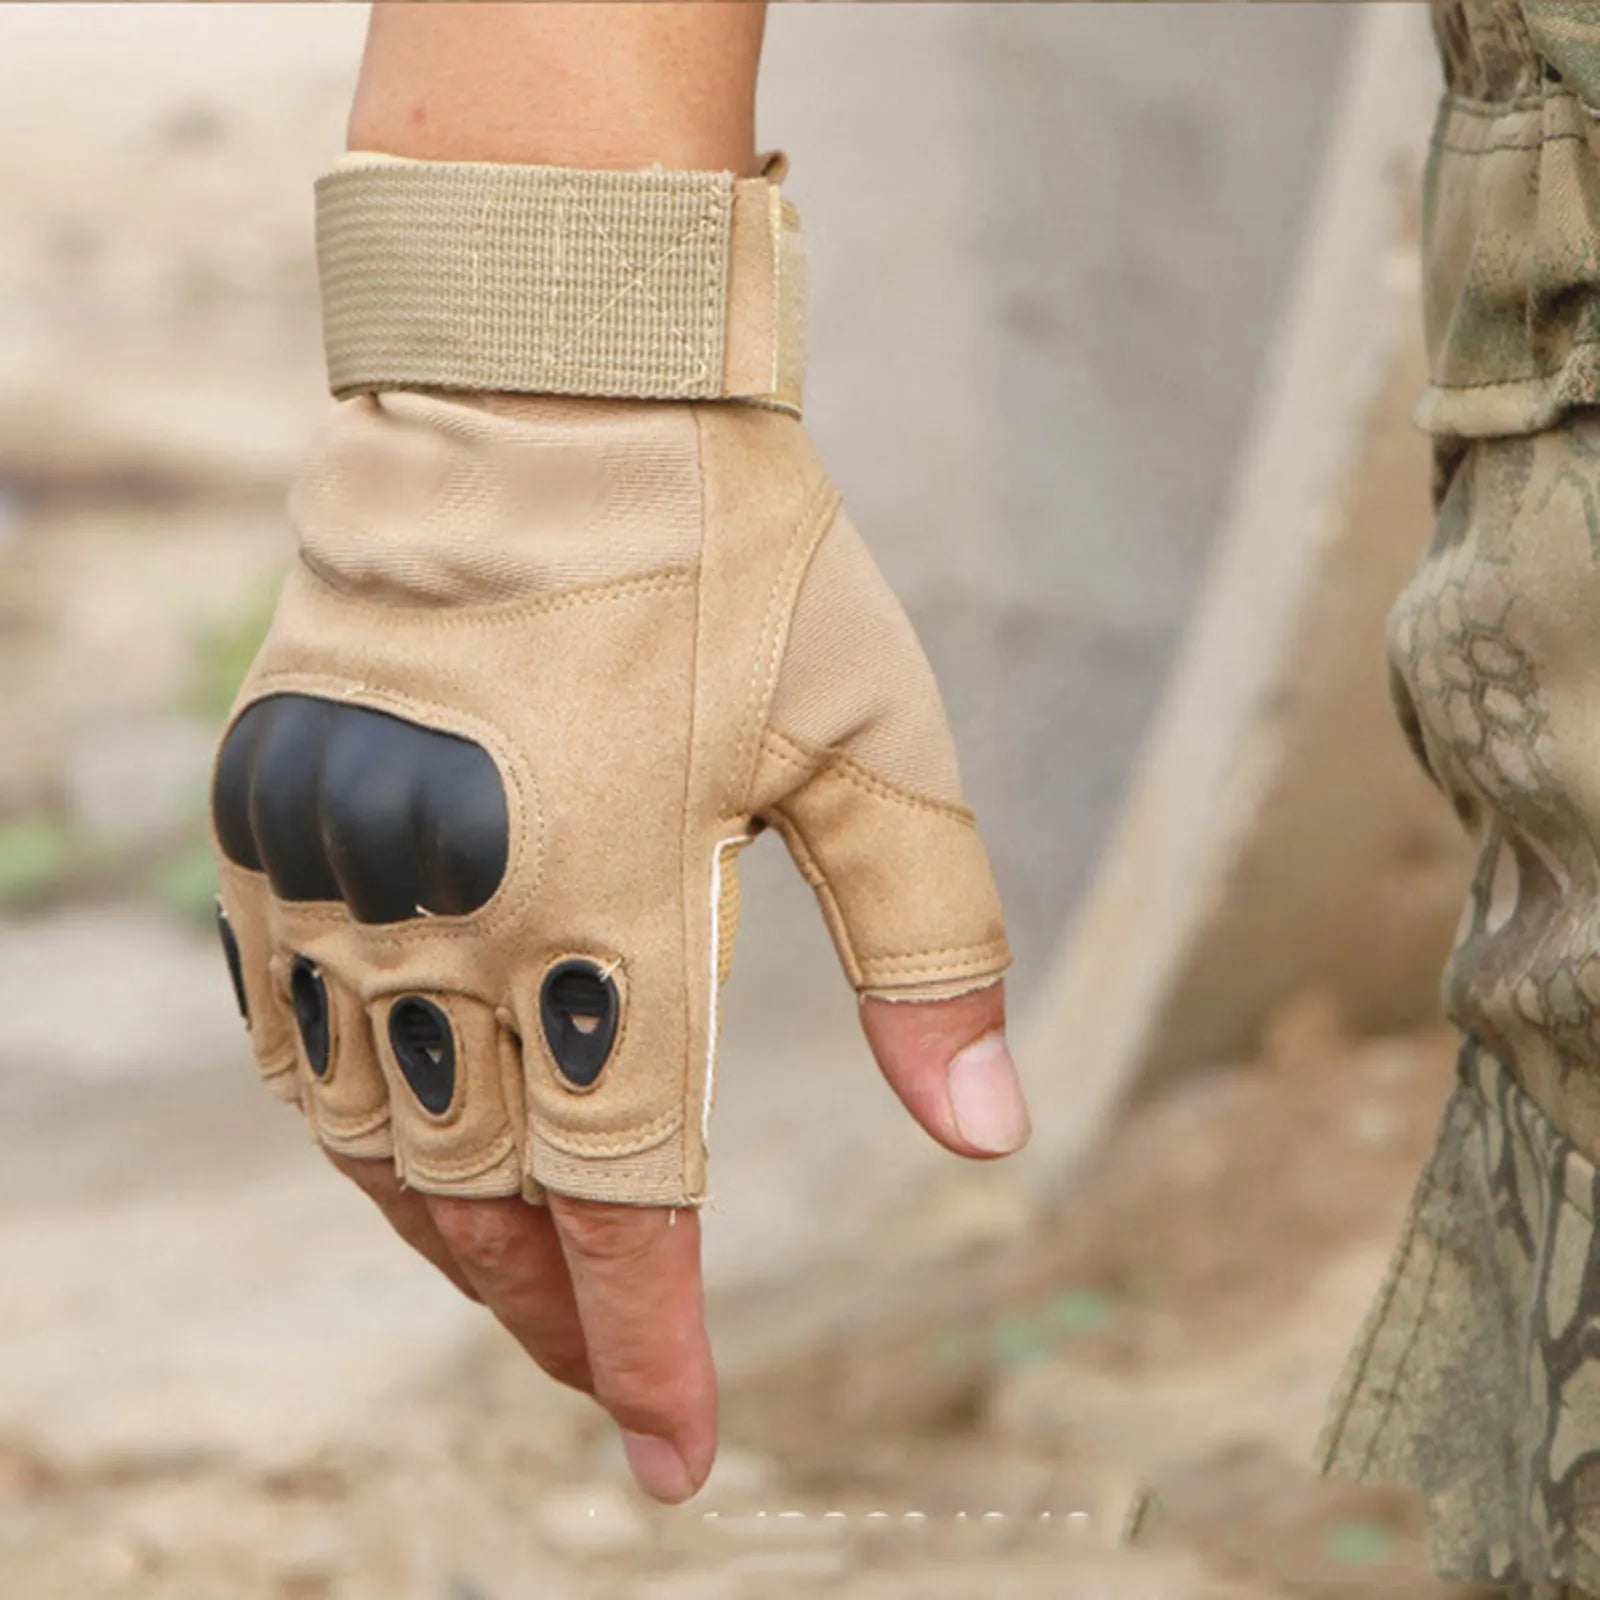 Gants militaire d'activité en plein air - Modèle gant ou mitaine